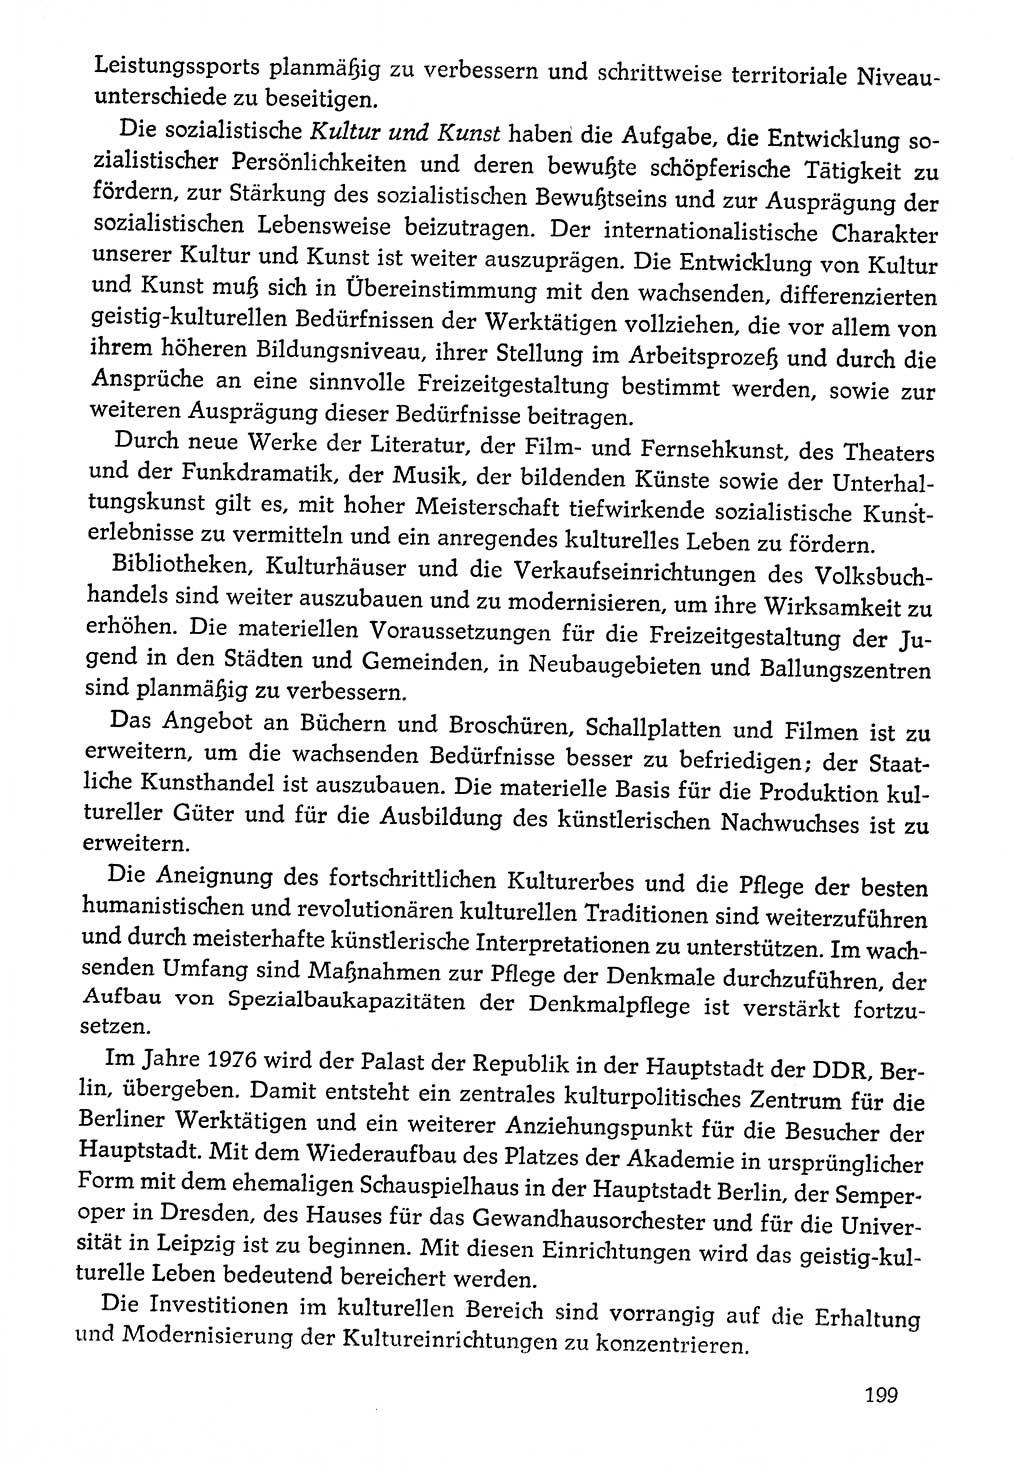 Dokumente der Sozialistischen Einheitspartei Deutschlands (SED) [Deutsche Demokratische Republik (DDR)] 1976-1977, Seite 199 (Dok. SED DDR 1976-1977, S. 199)